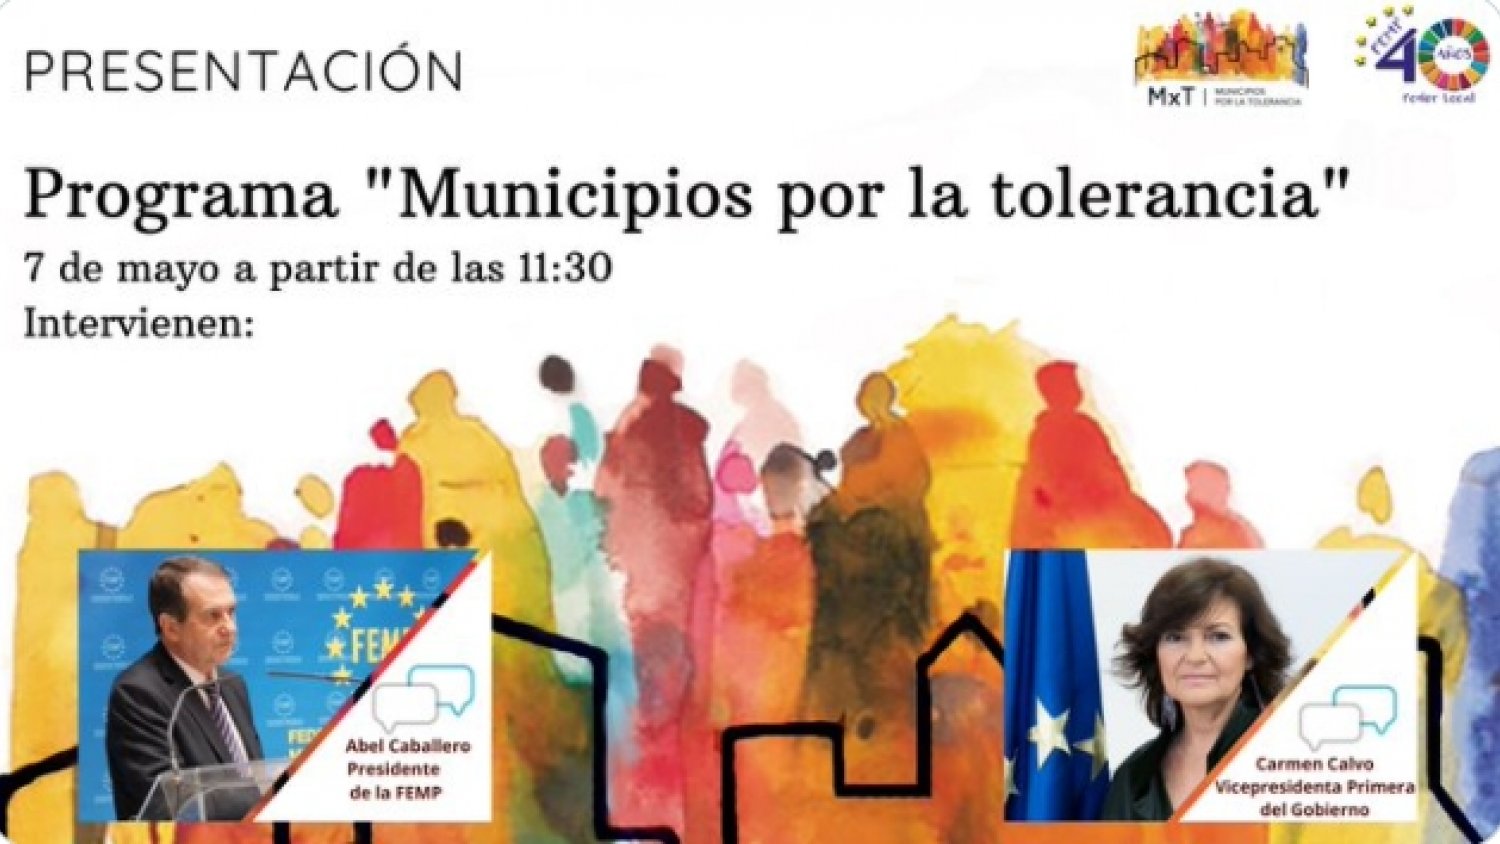 La ciudad de Málaga se integra en el programa “Municipios por la tolerancia”